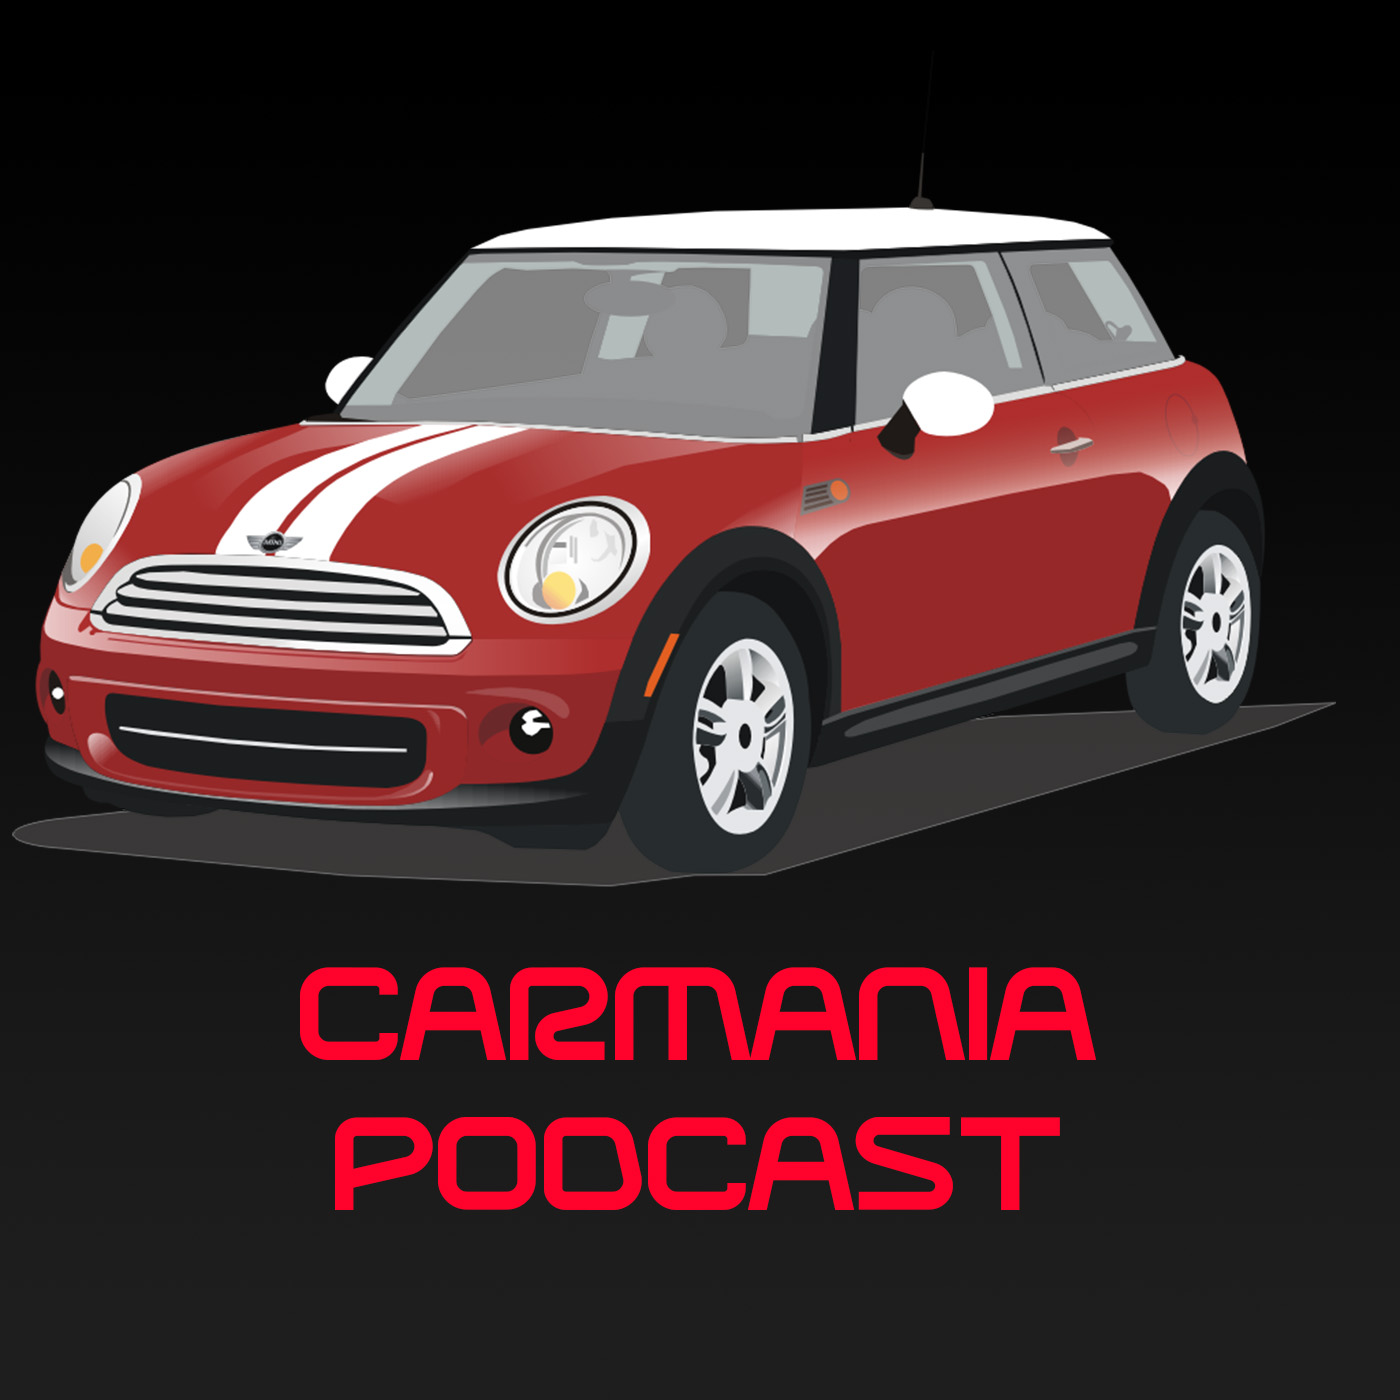 Carmania - Racing and the Future